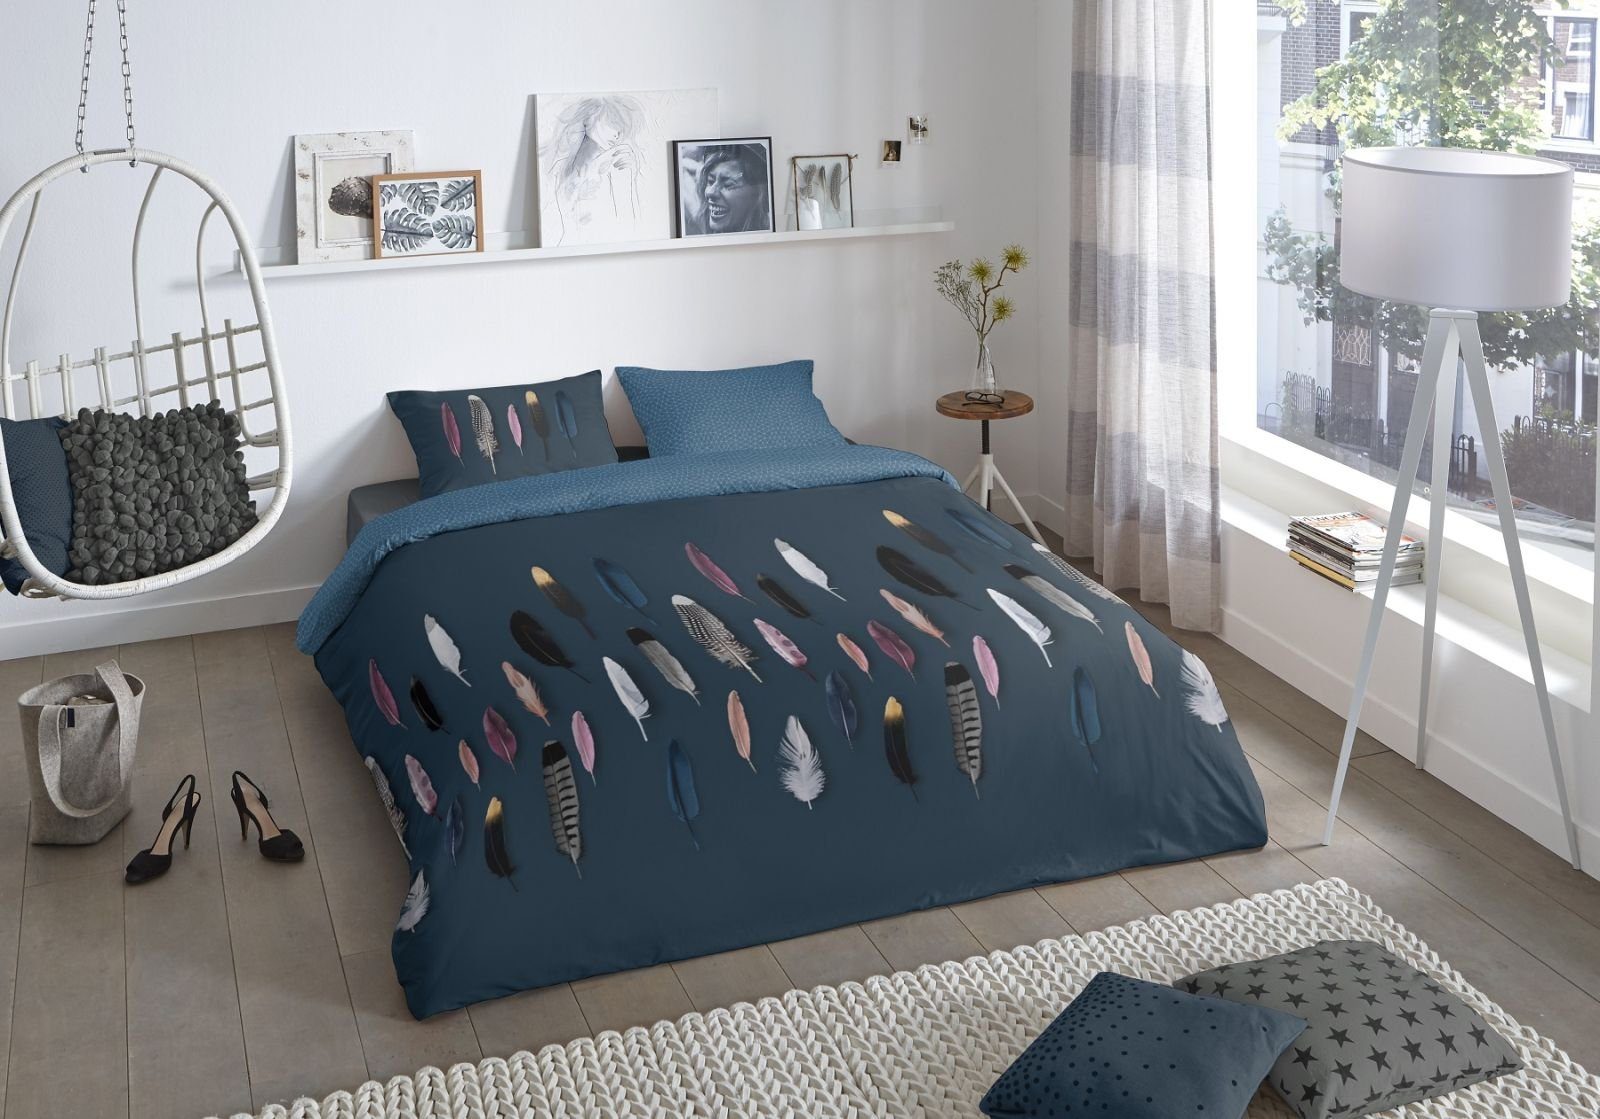 Bettwäsche Bettwäsche mit Federn blau 135x200, soma, Baumolle, 2 teilig,  Bettbezug Kopfkissenbezug Set kuschelig weich hochwertig